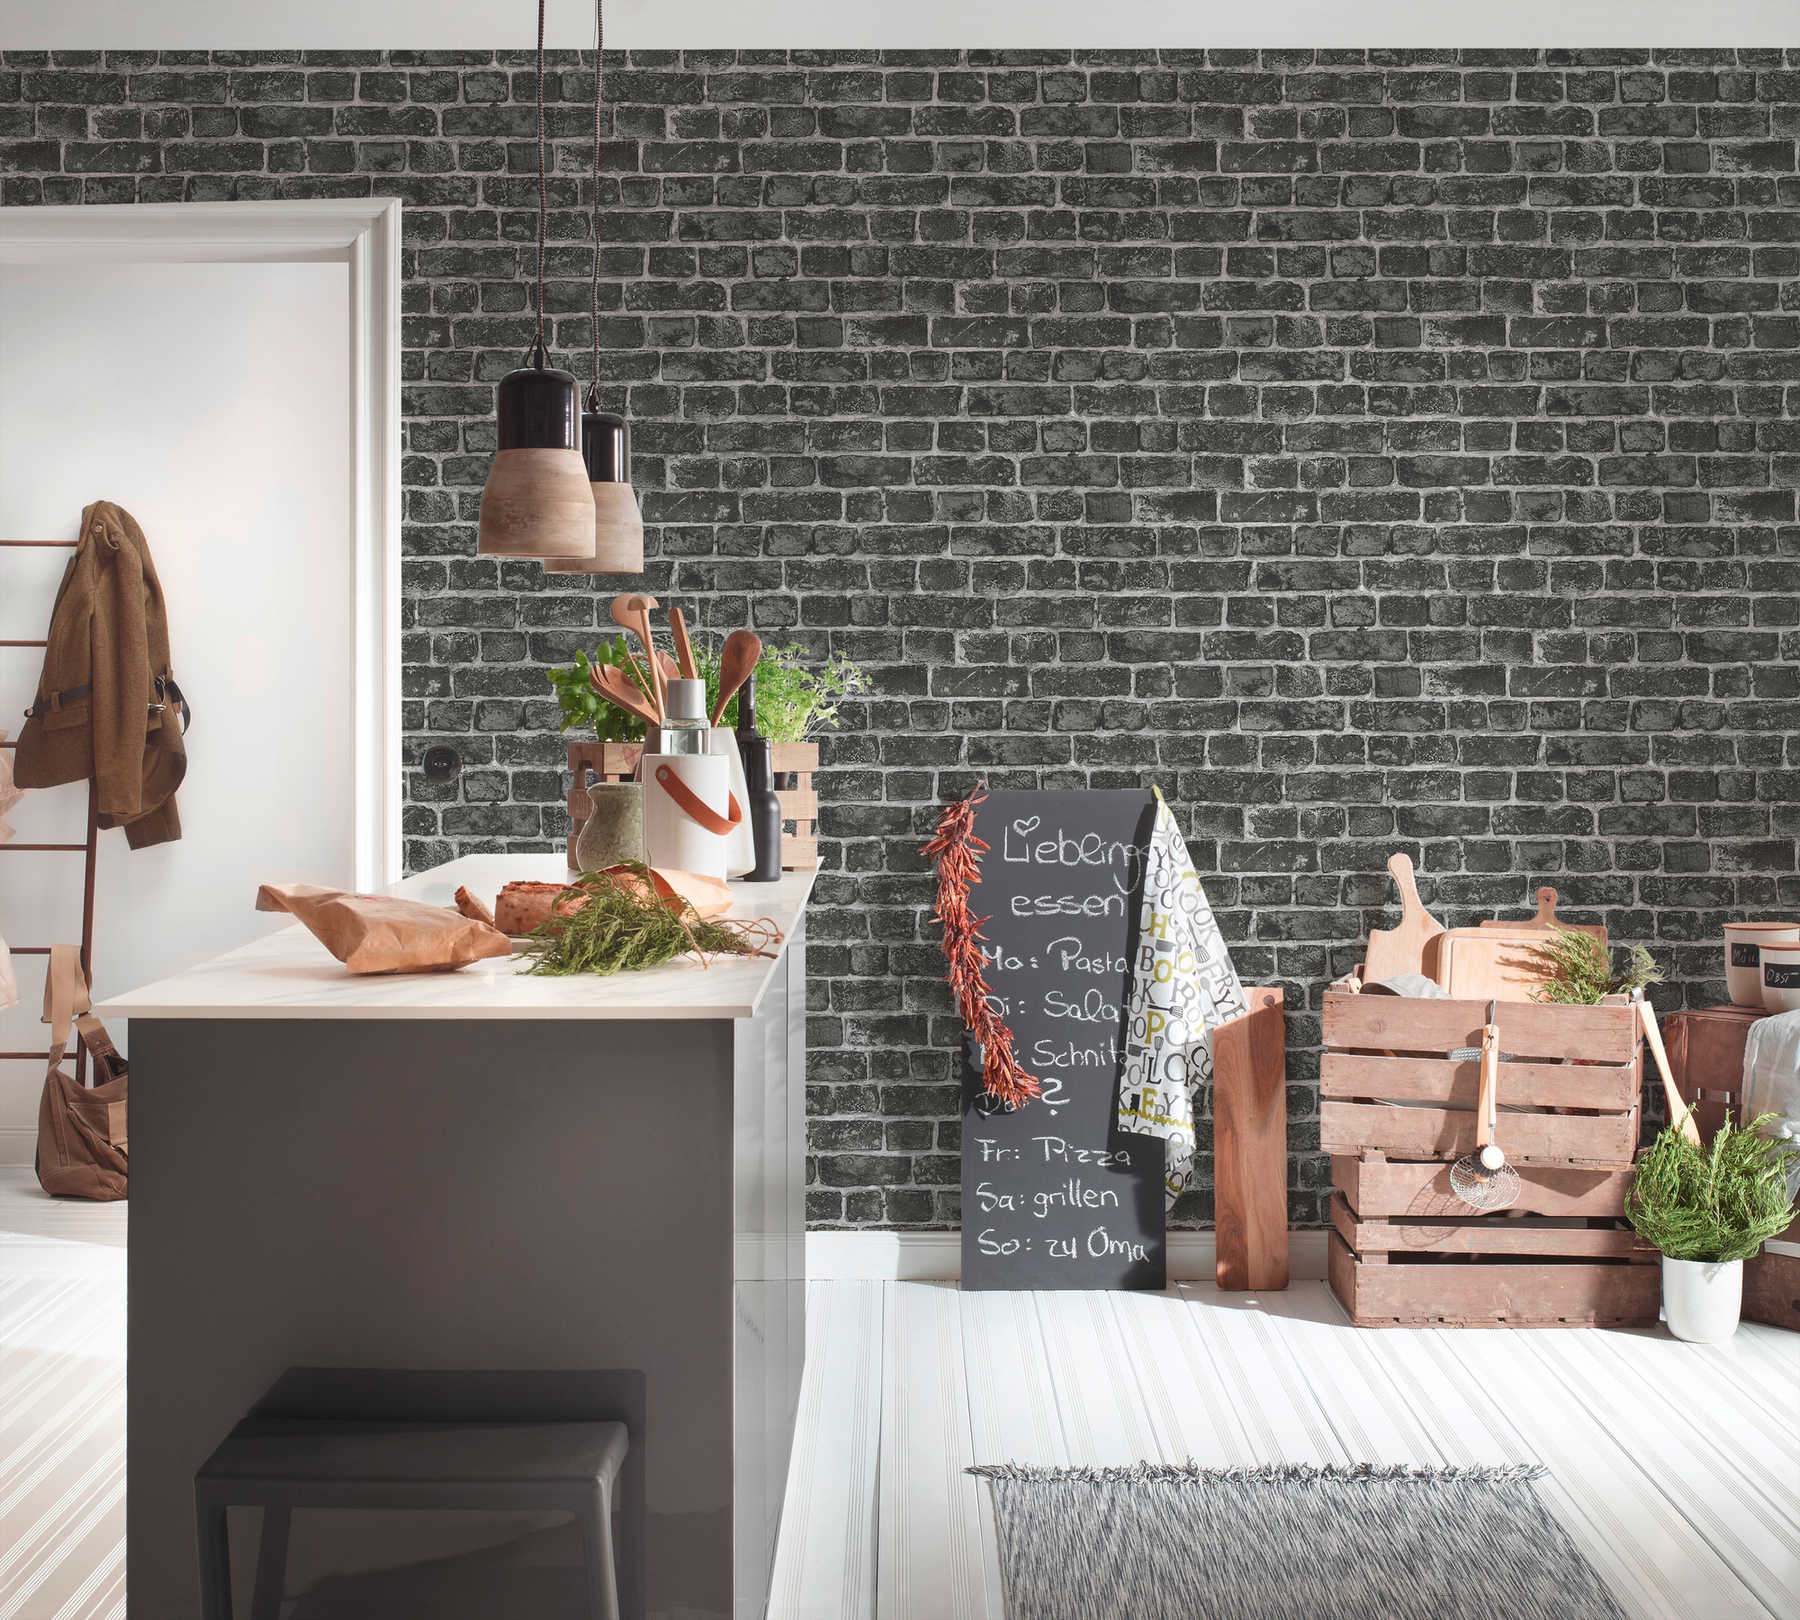             Papier peint mur en pierres naturelles avec briques gris foncé et joints clairs - noir, gris
        